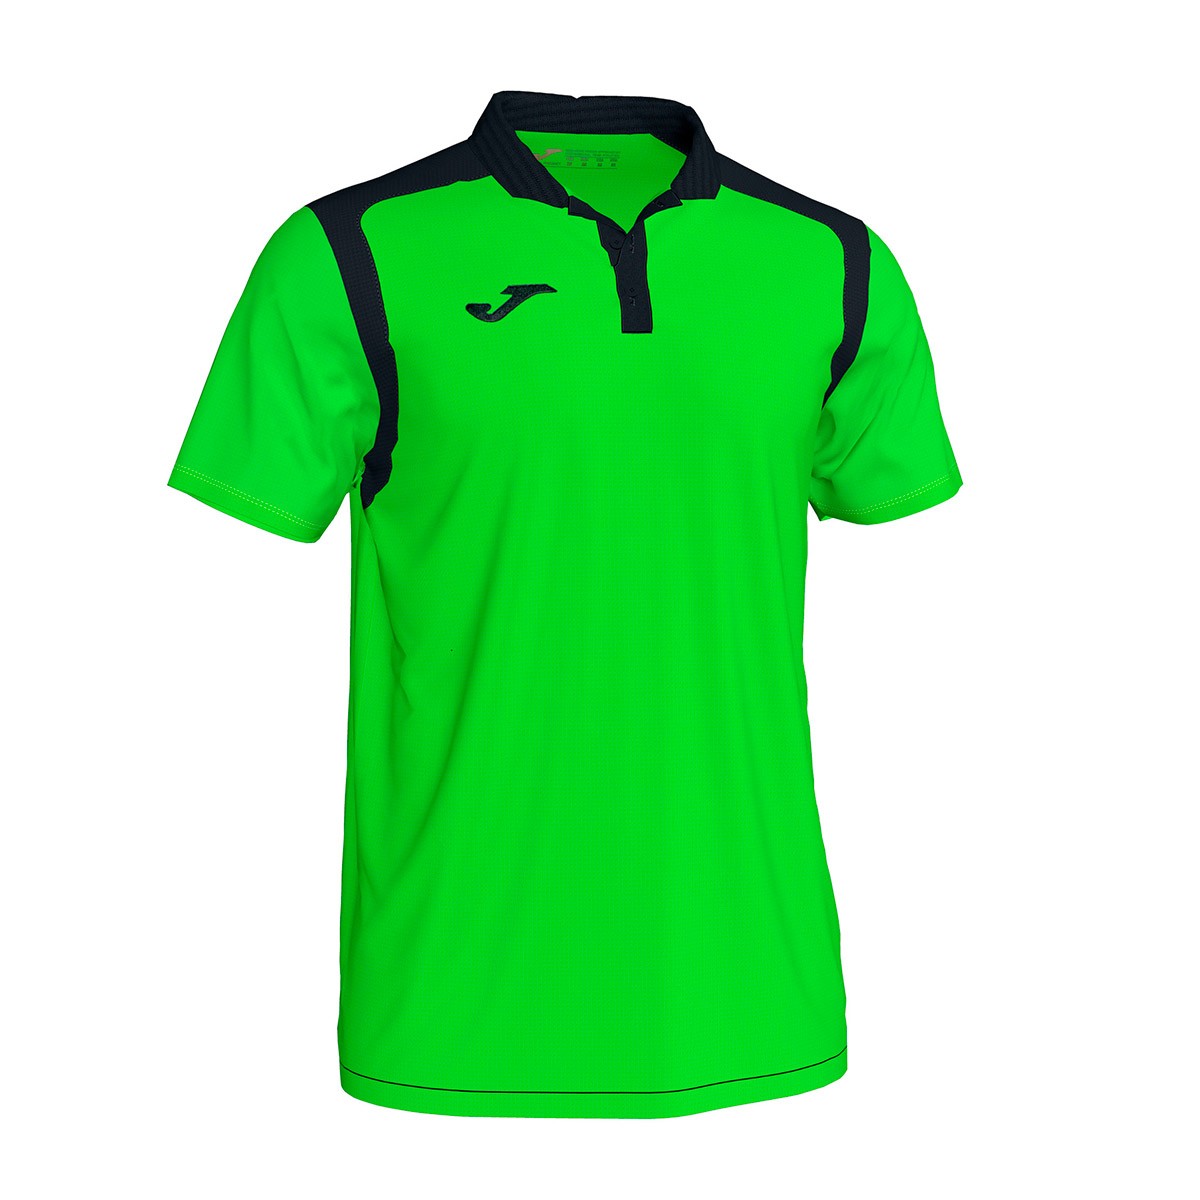 Polo shirt Champion V m/c Verde flúor-Black - Emotion